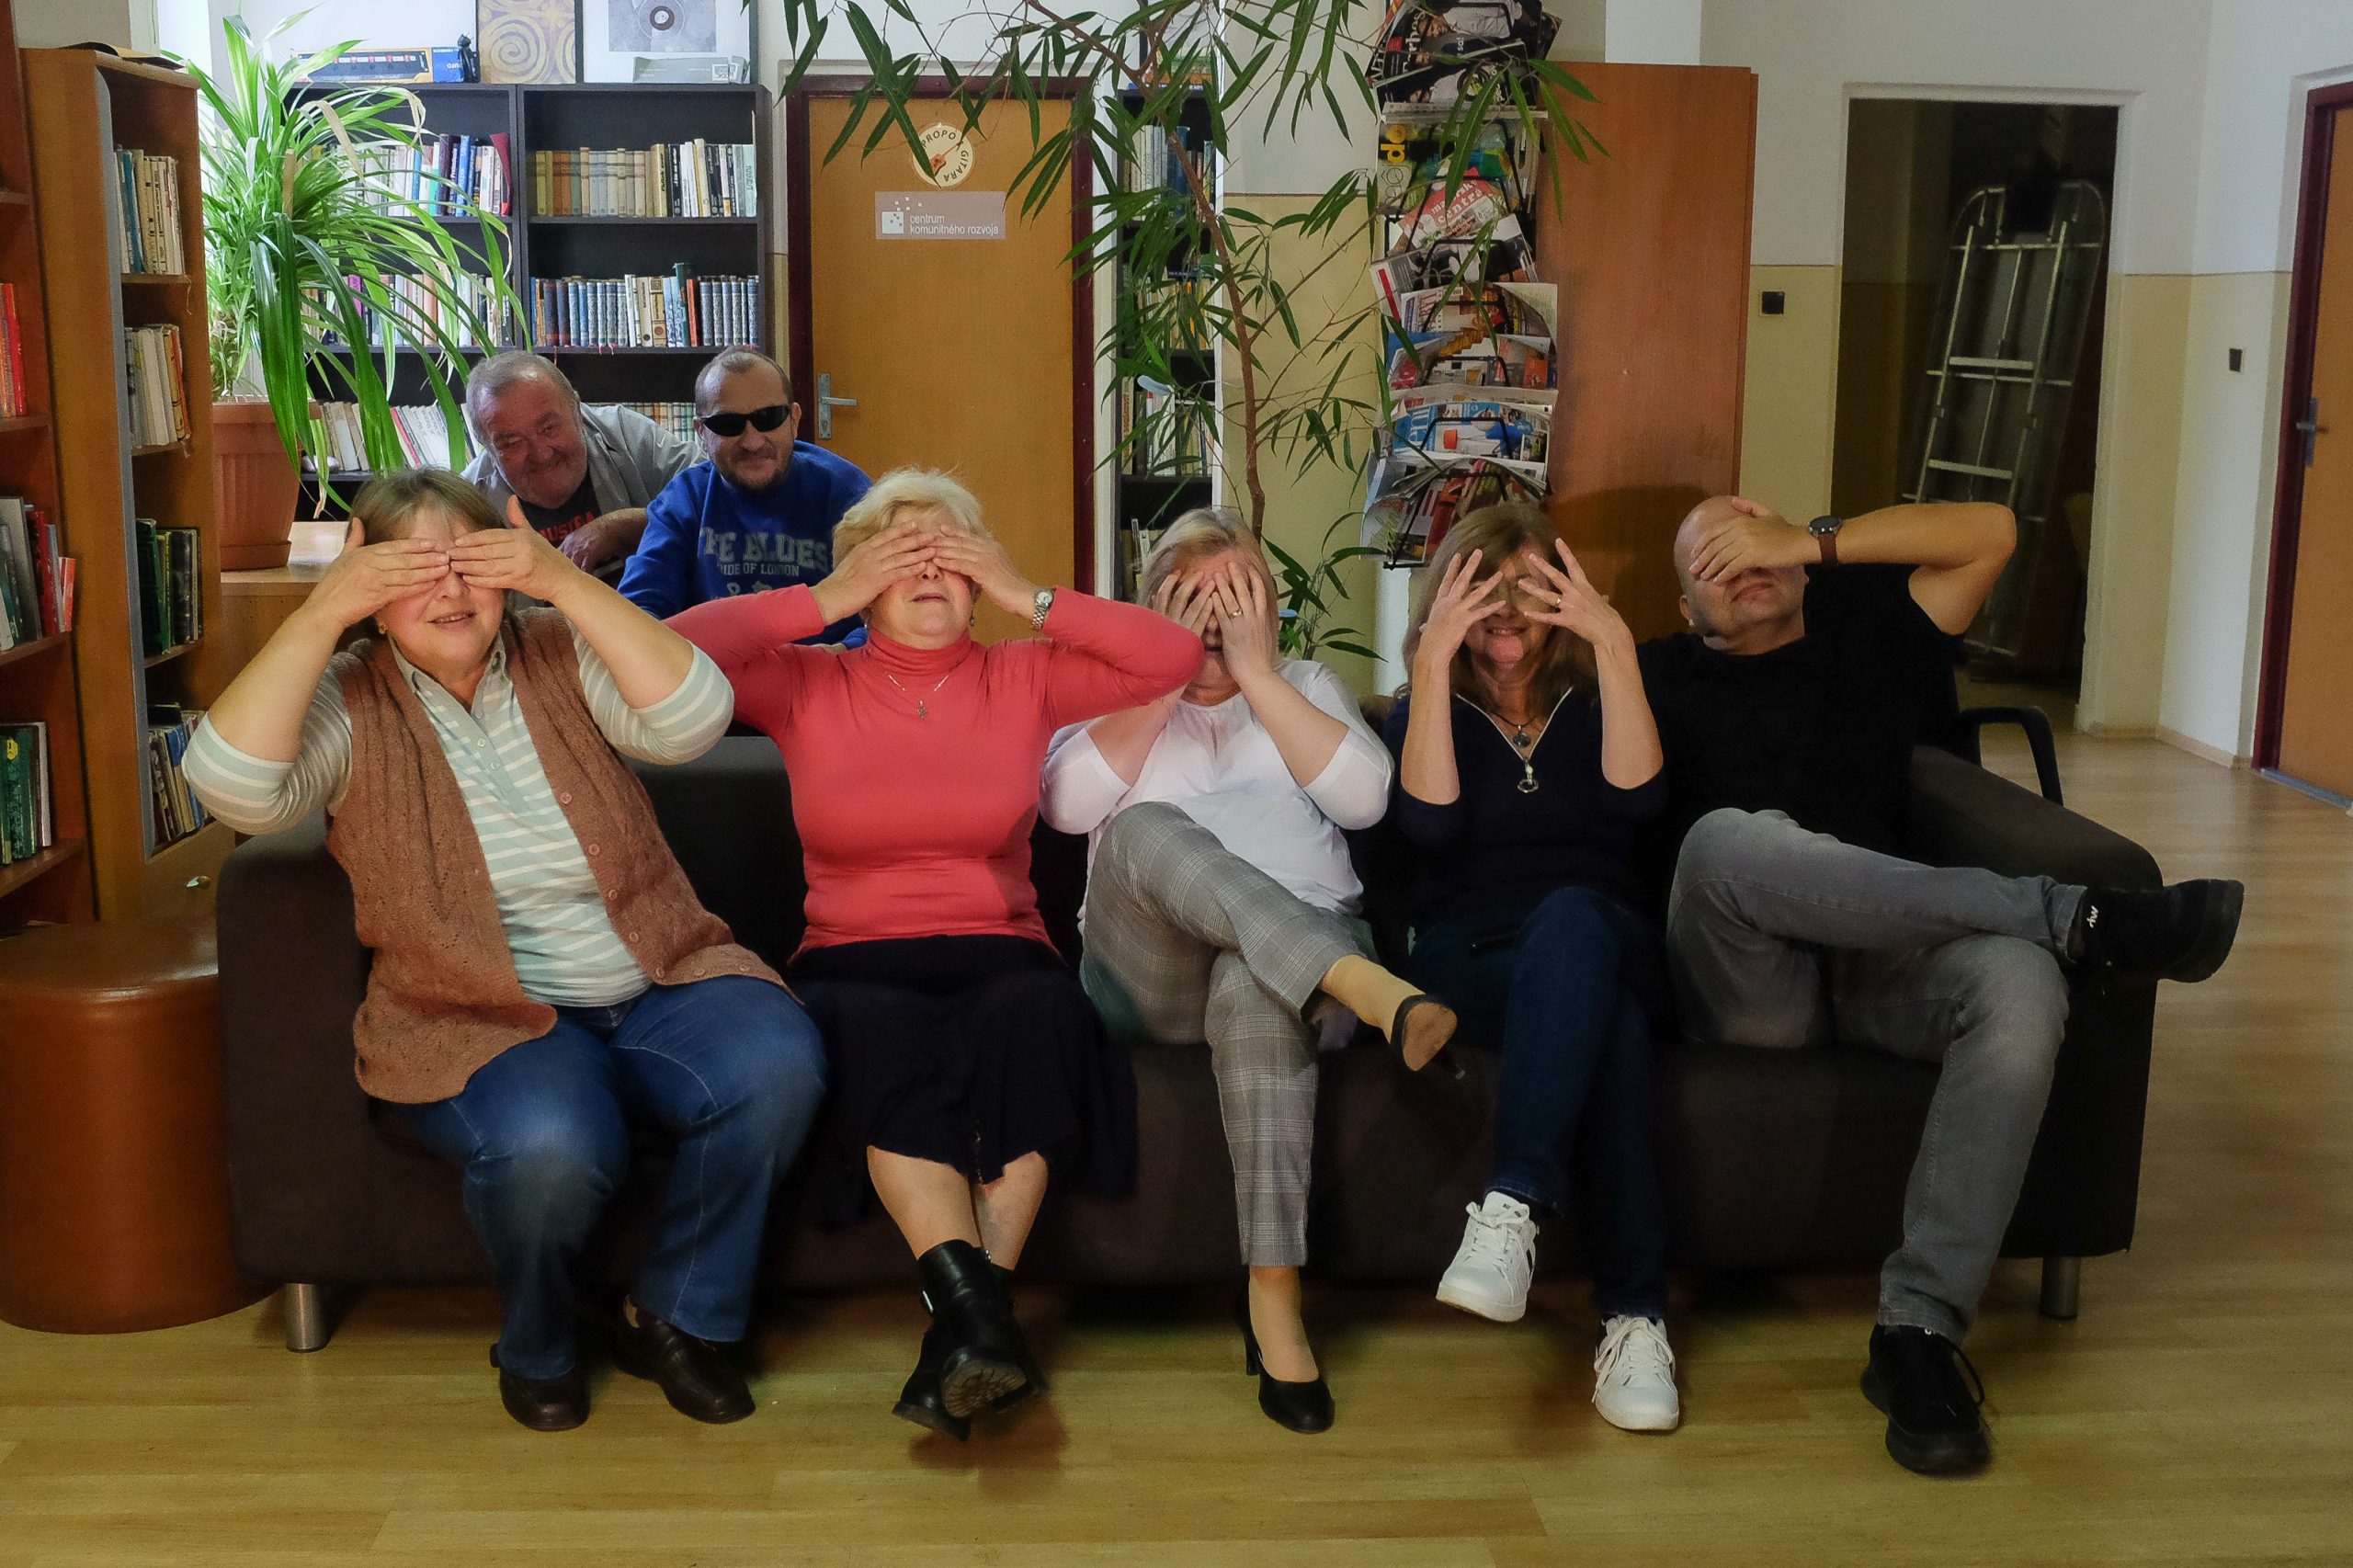 členovia nitrianskej únie sedia na gauči a zakrývajú si oči.